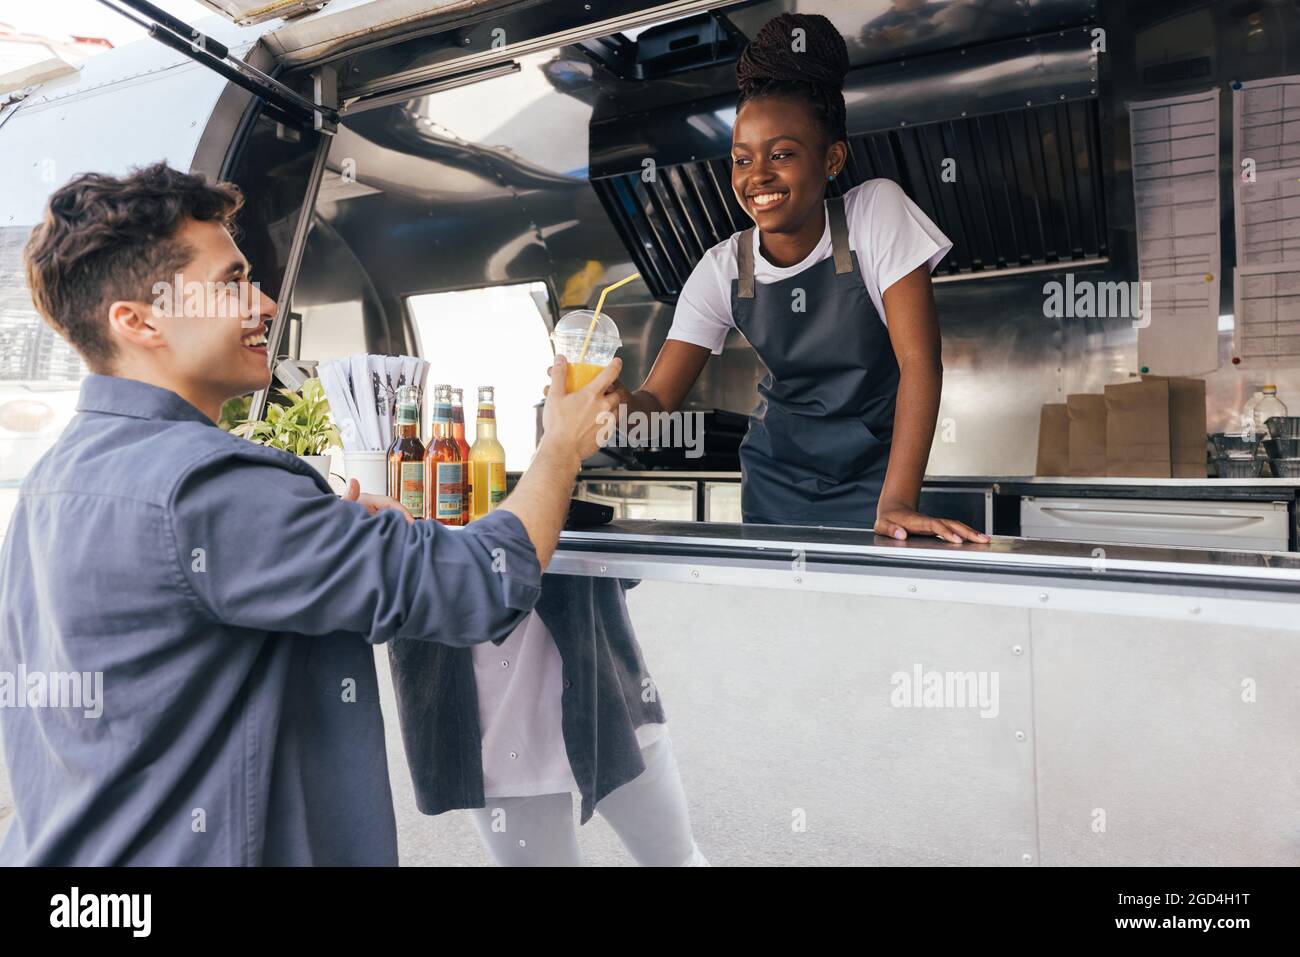 Besitzer des Food-Trucks, der den Kunden ansieht. Lächelnder Kunde, der von der Verkäuferin ein Getränk erhält. Stockfoto